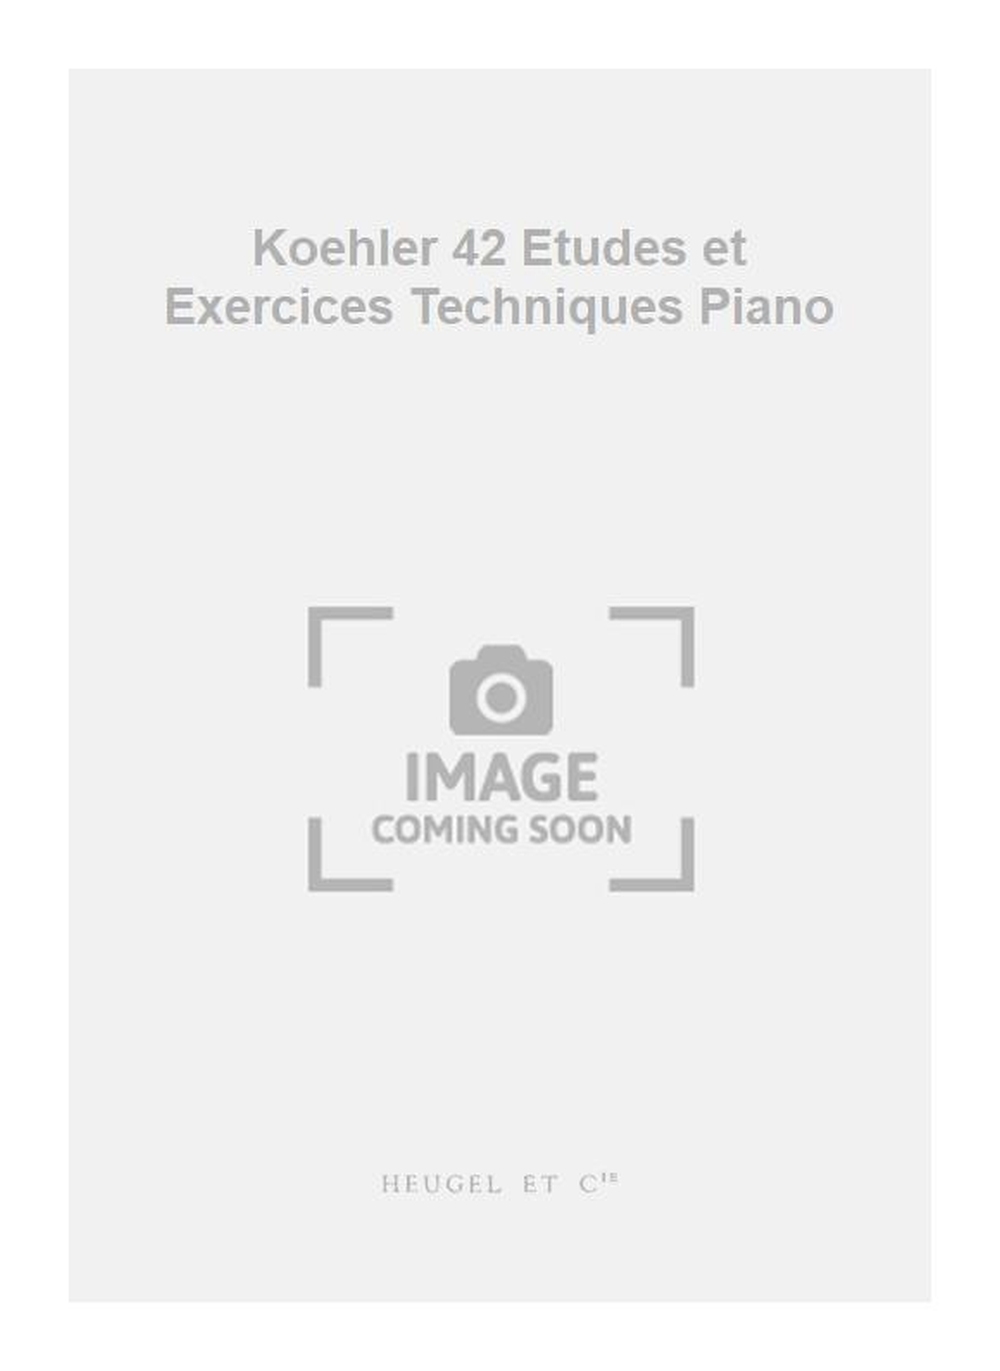 Louis Khler: Koehler 42 Etudes et Exercices Techniques Piano